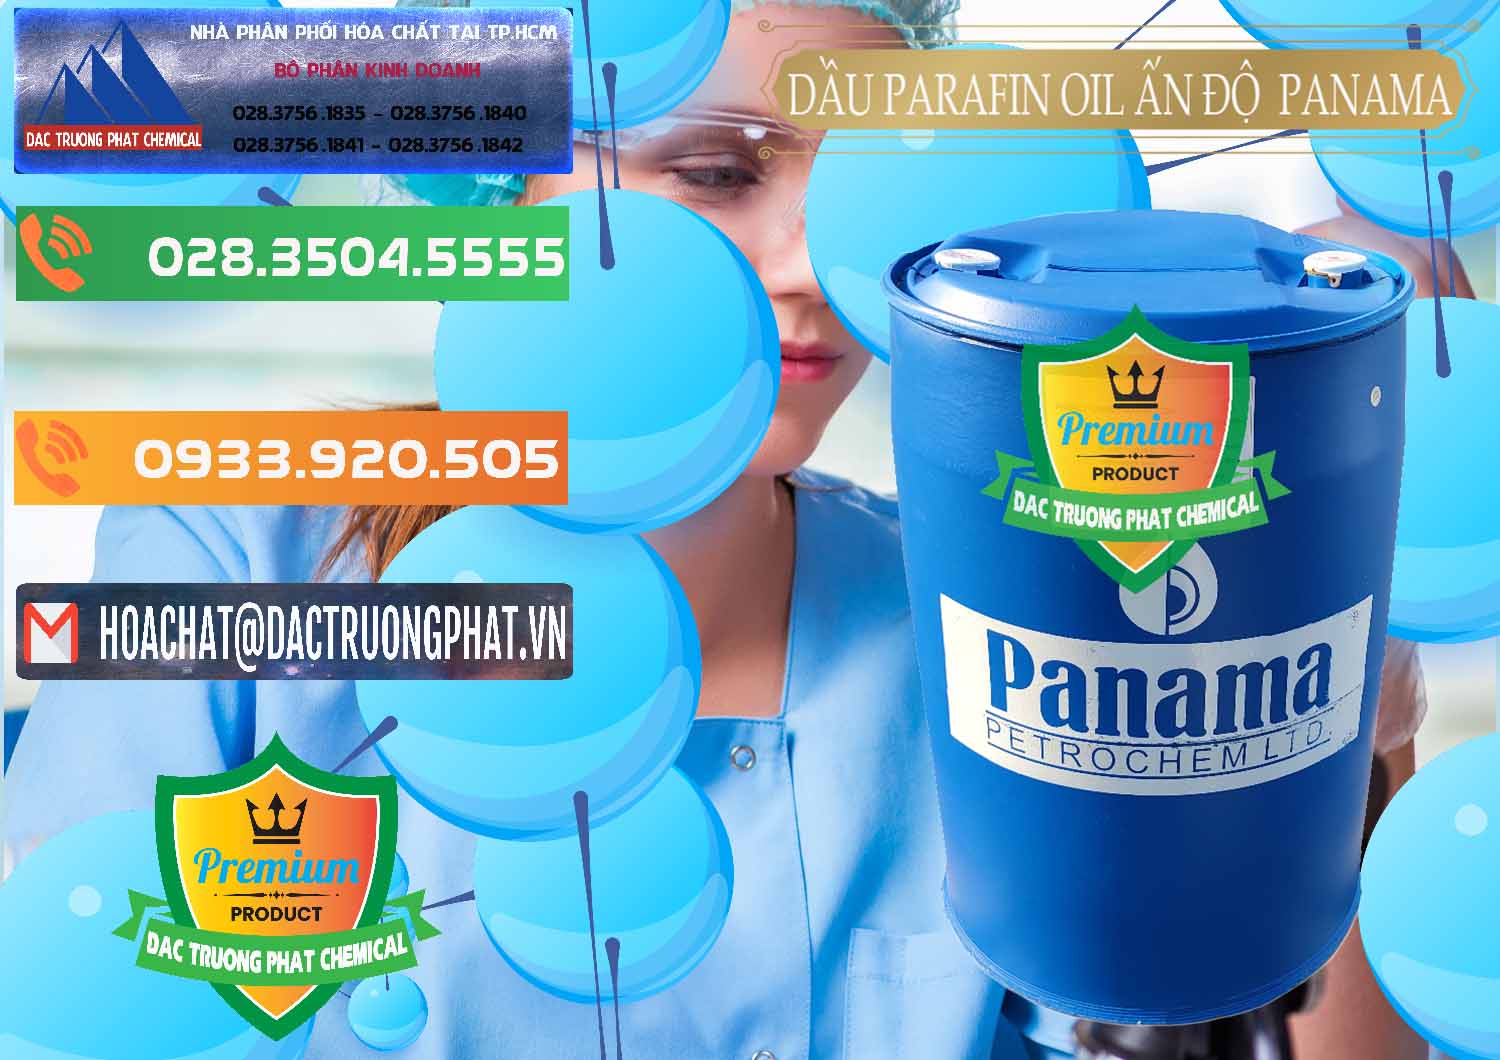 Đơn vị nhập khẩu _ bán Dầu Parafin Oil Panama Ấn Độ India - 0061 - Chuyên phân phối _ cung cấp hóa chất tại TP.HCM - hoachatxulynuoc.com.vn